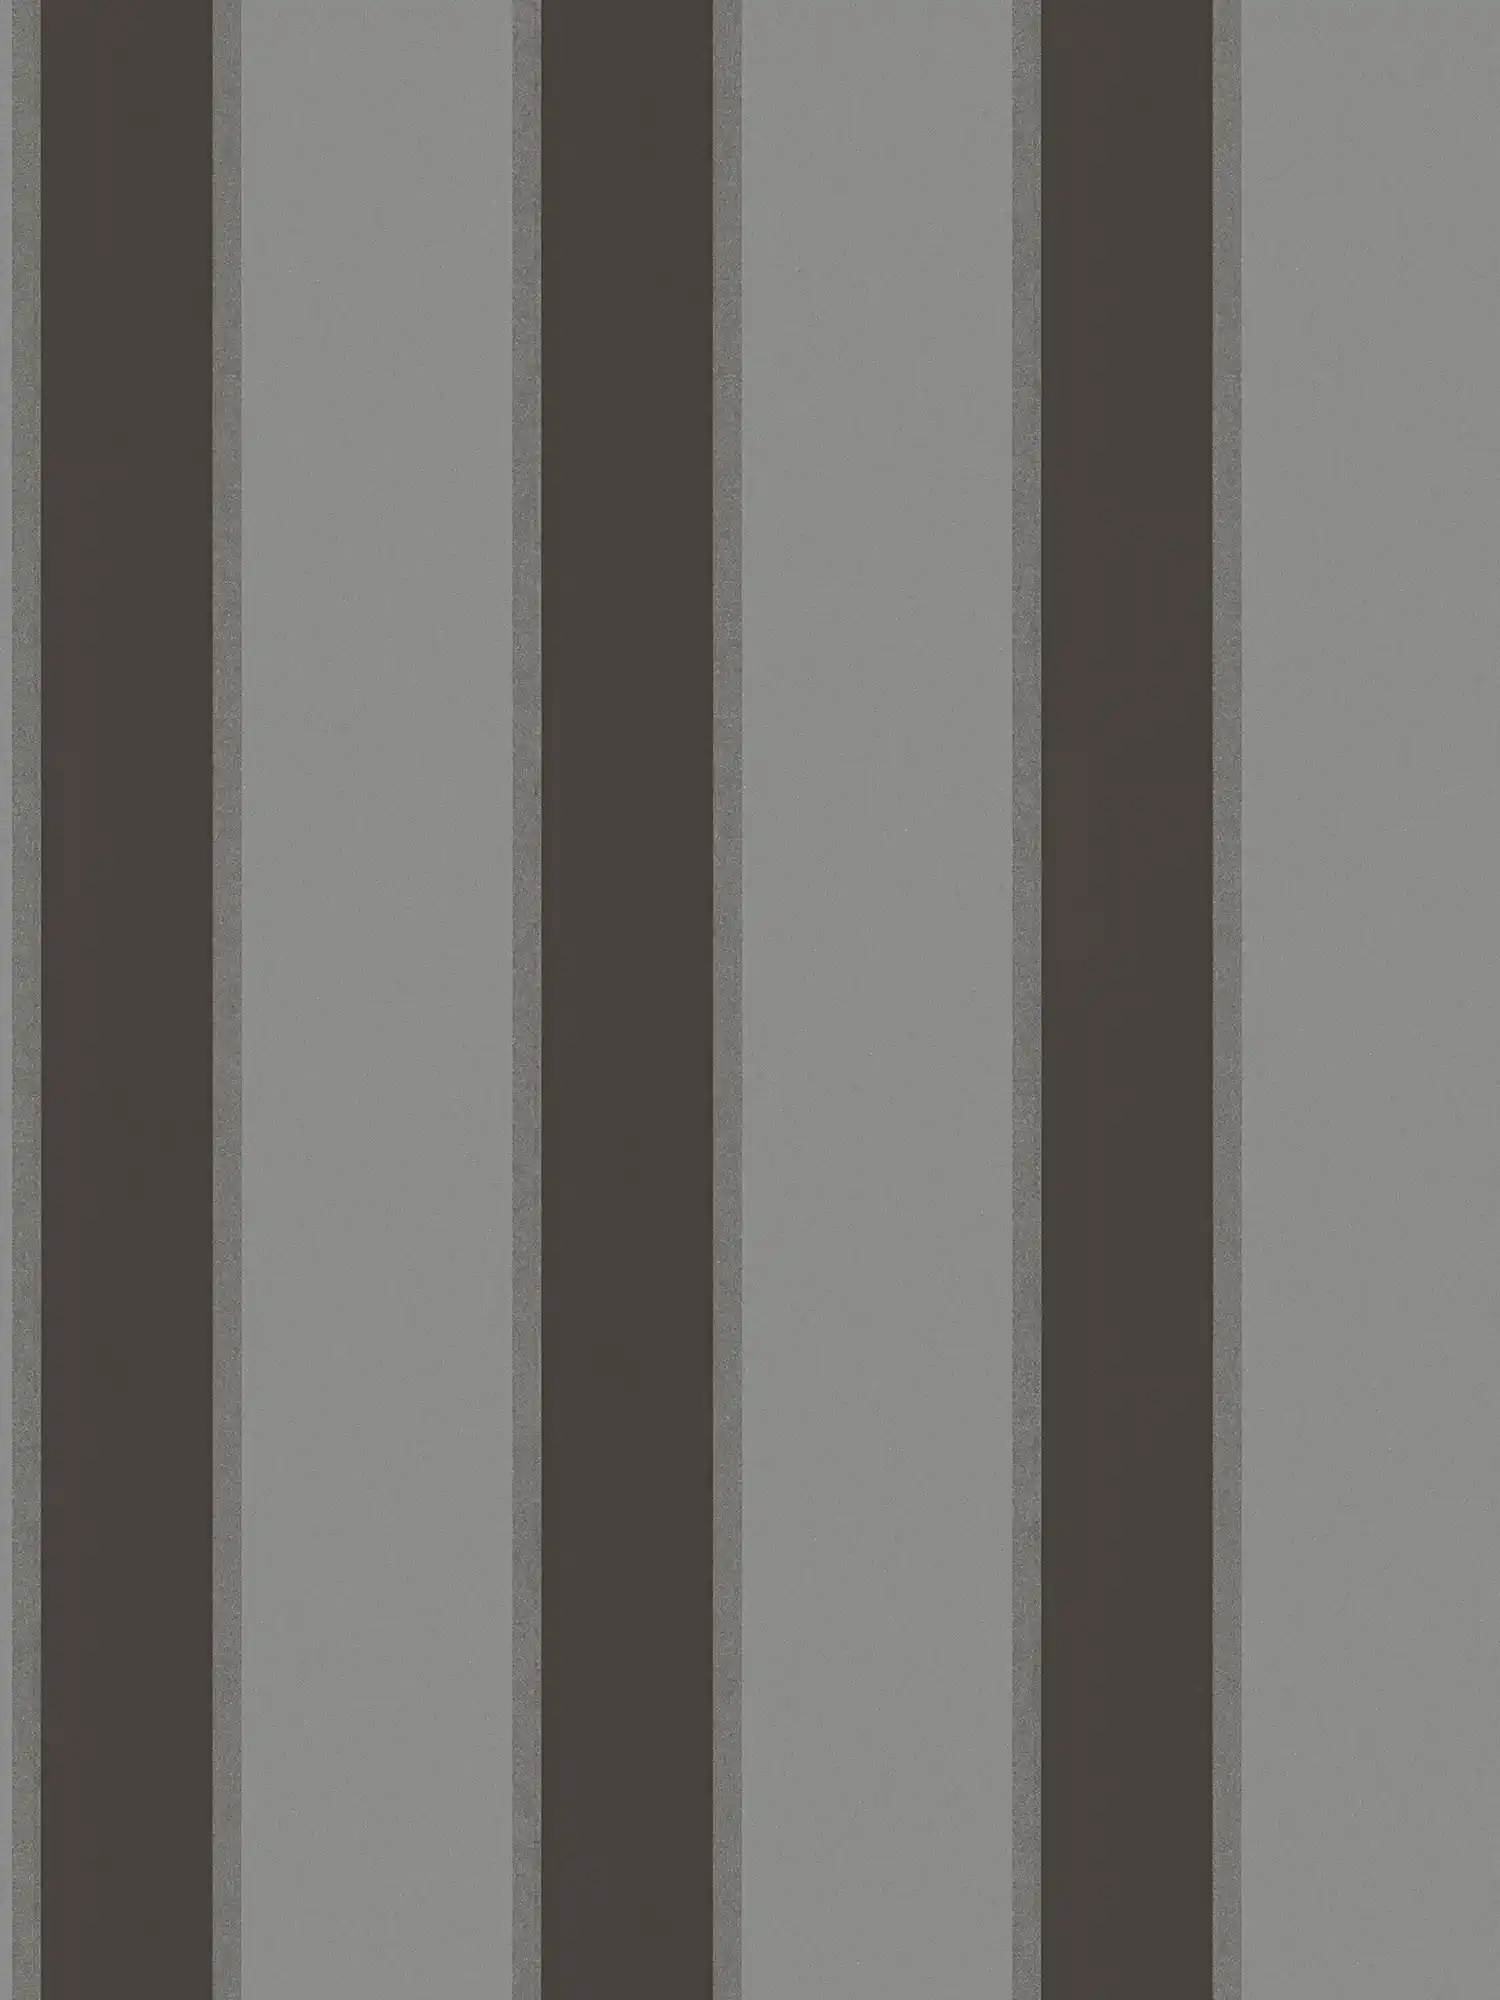 Carta da parati metallizzata con motivo a righe - grigio, nero
